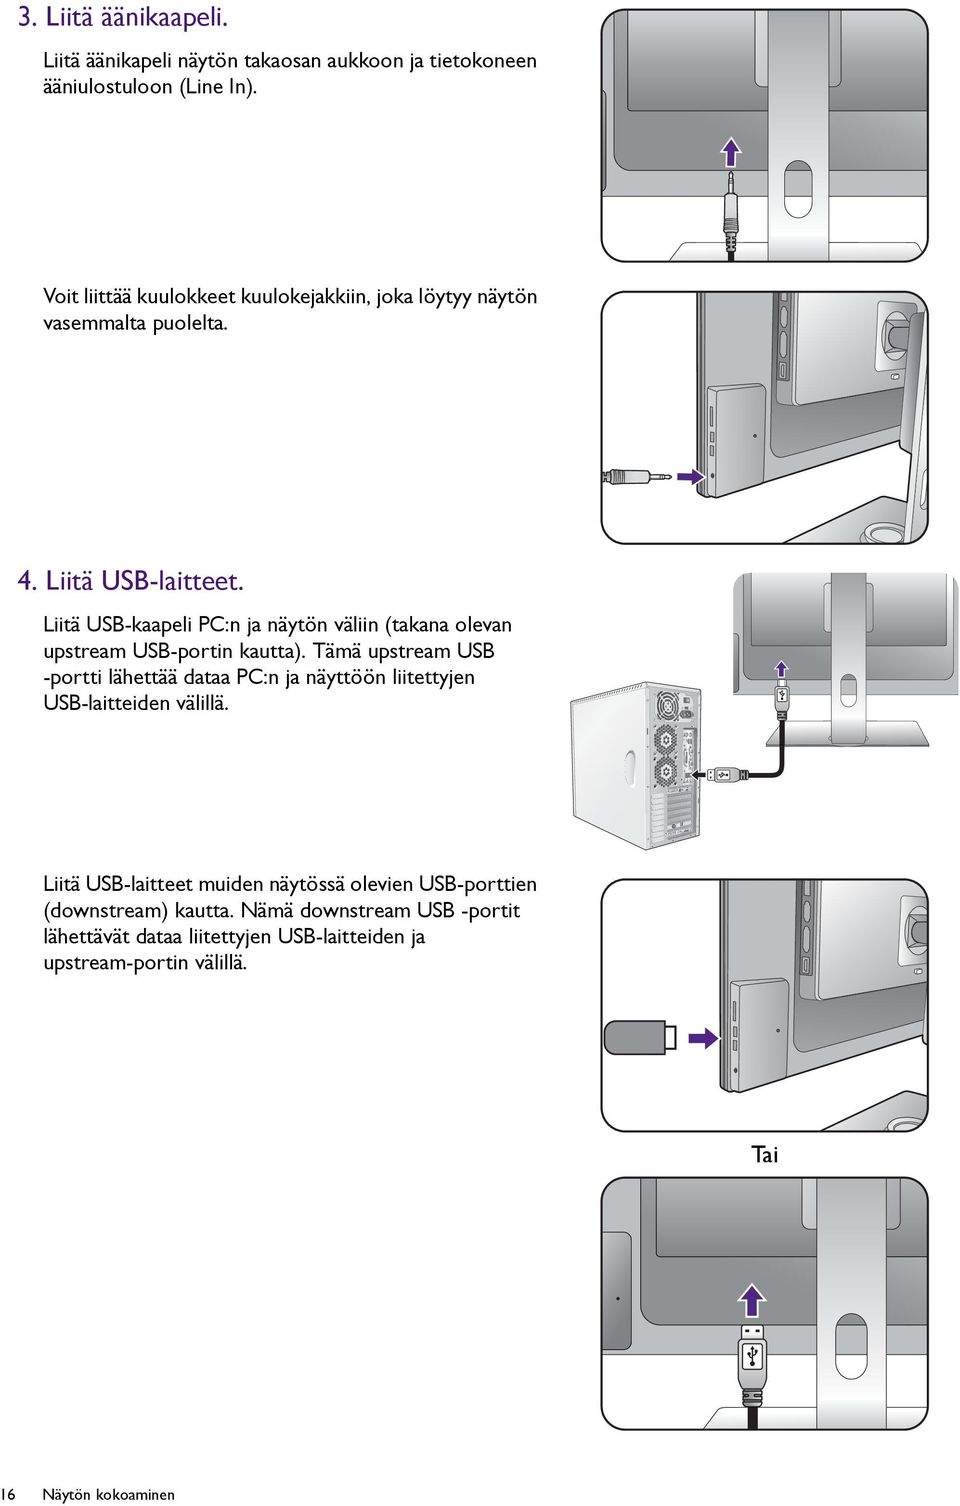 Liitä USB-kaapeli PC:n ja näytön väliin (takana olevan upstream USB-portin kautta).